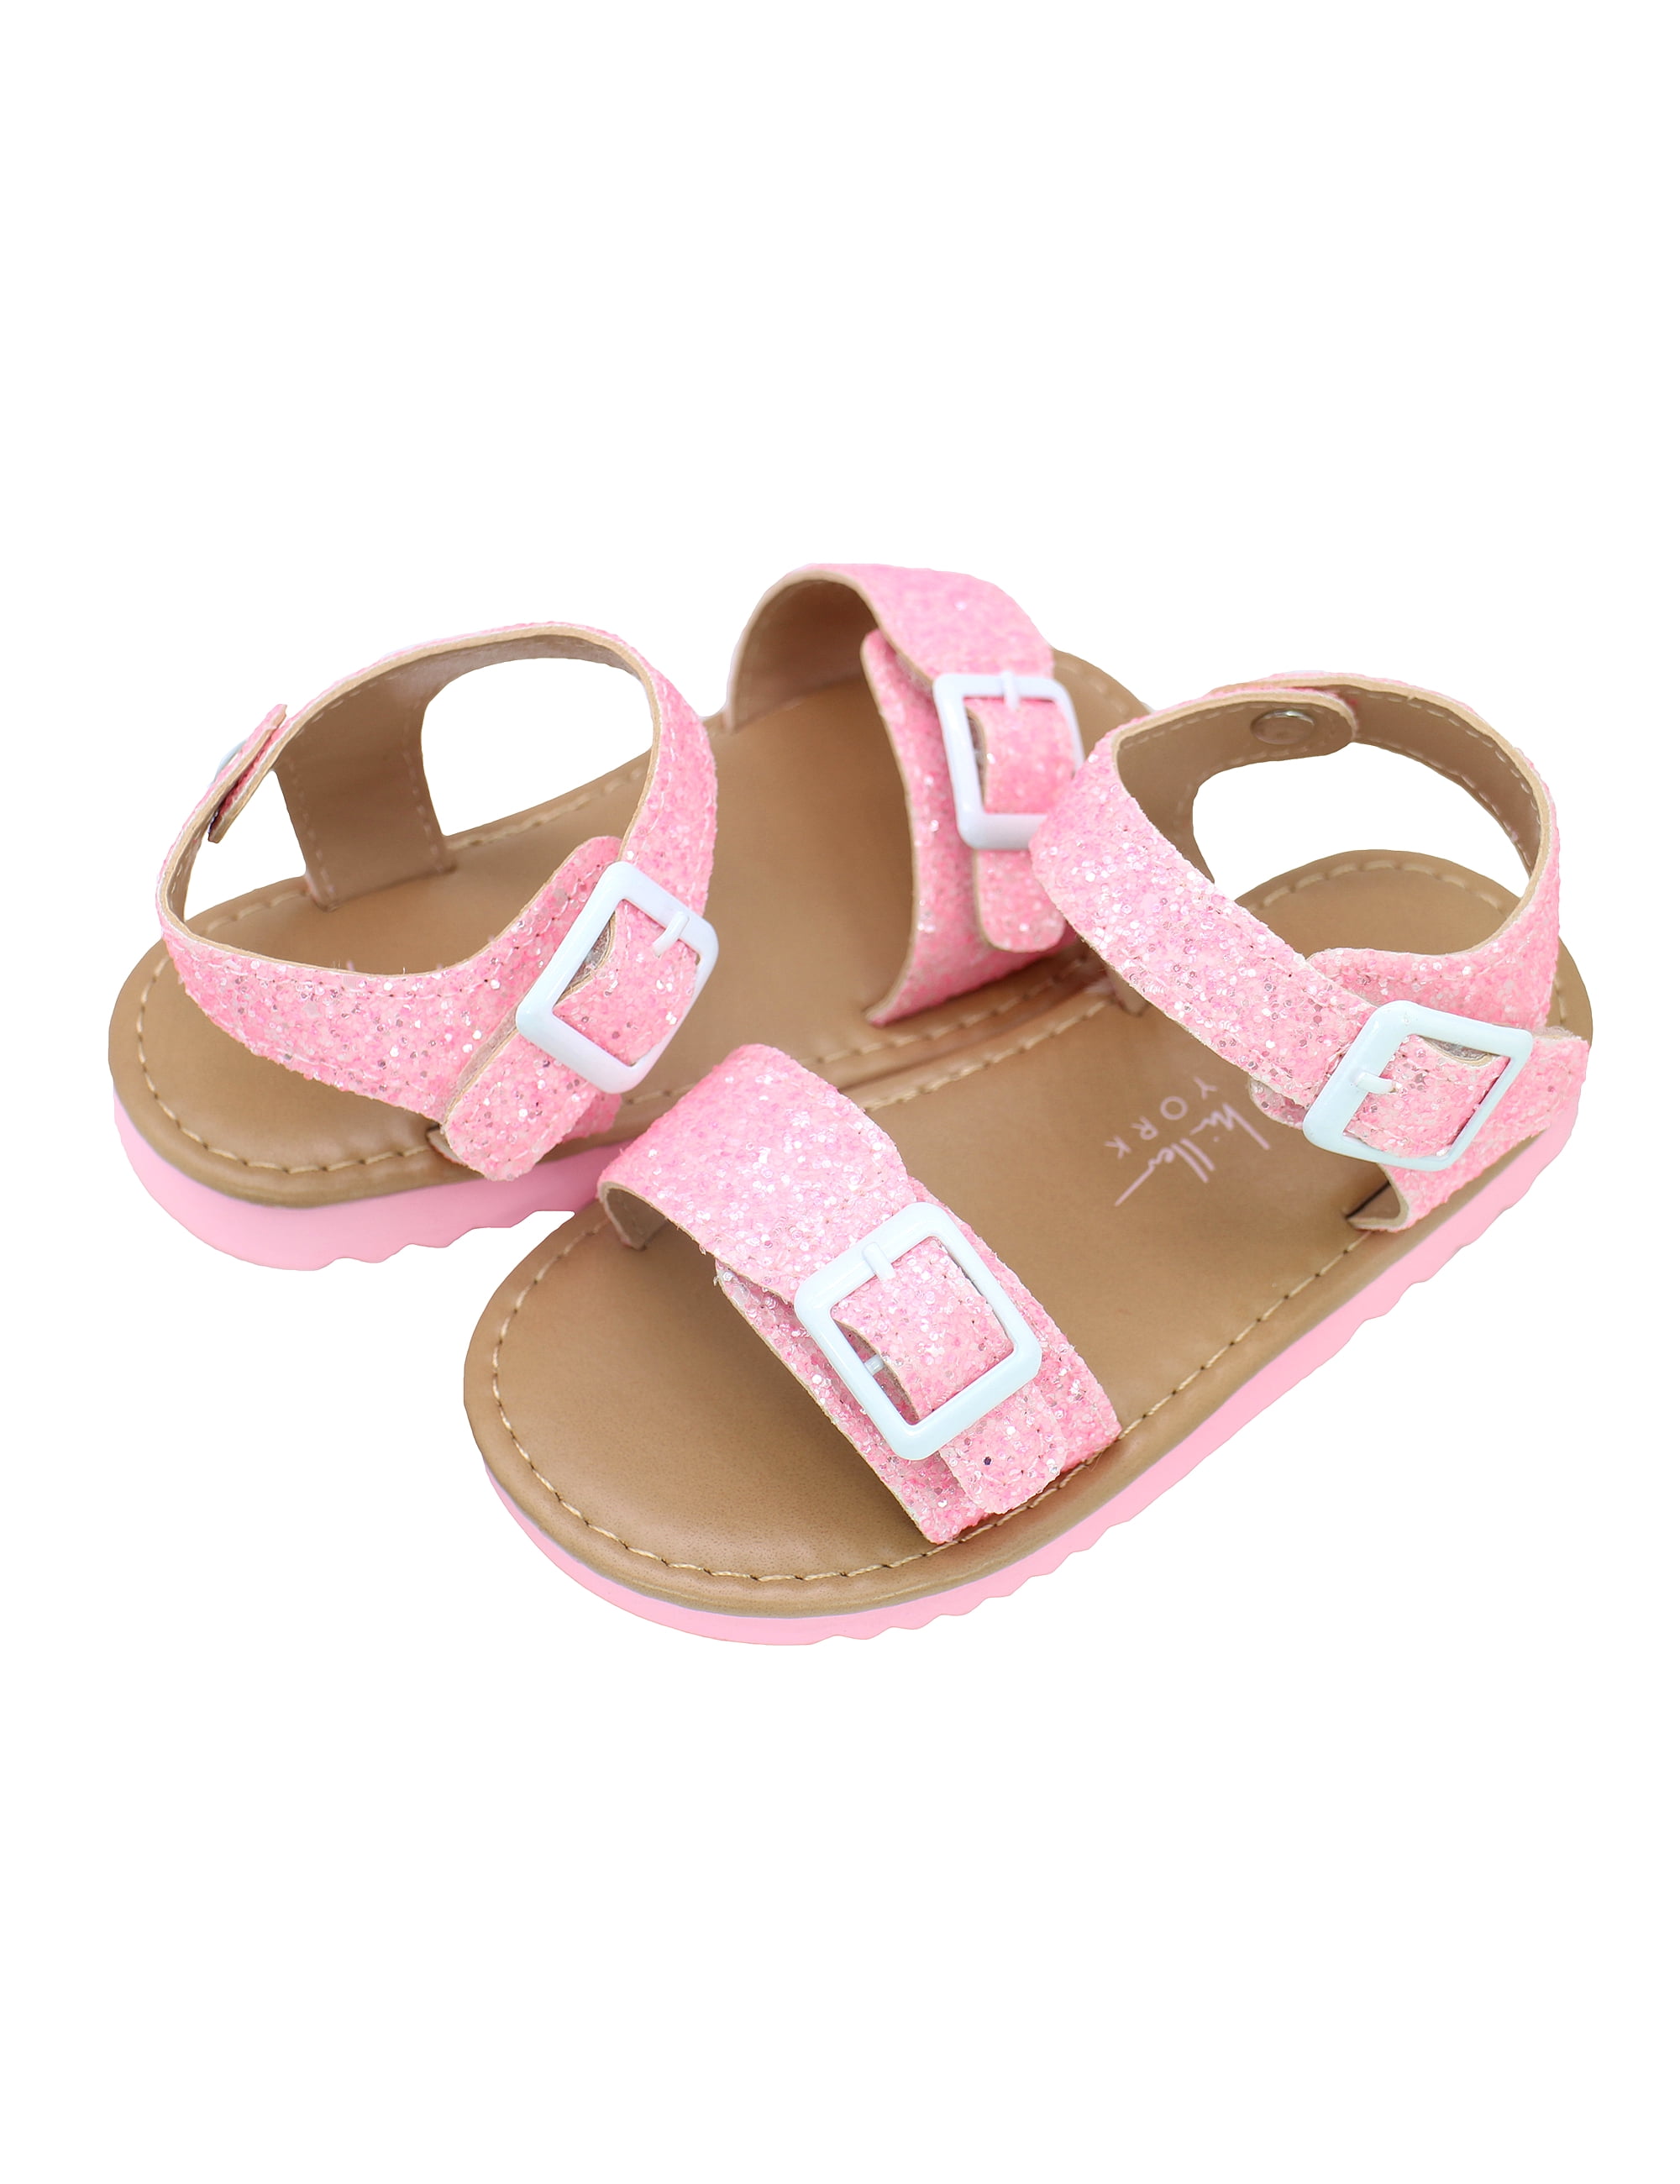 Toddler Nicole Miller Girls Chunky Glitter Sandals